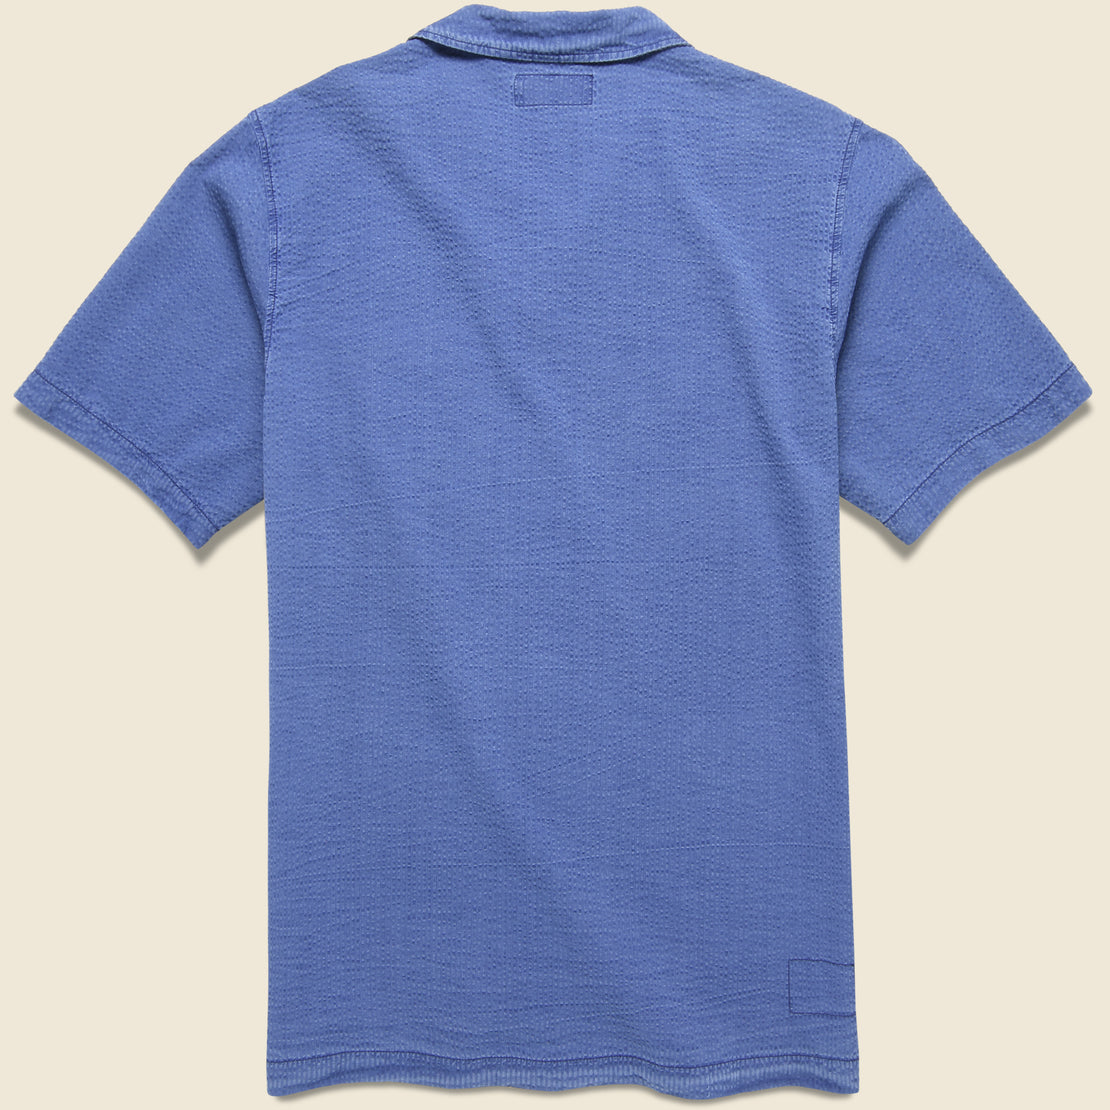 Seersucker Island Shirt - Indigo - Universal Works - STAG Provisions - Tops - S/S Woven - Seersucker